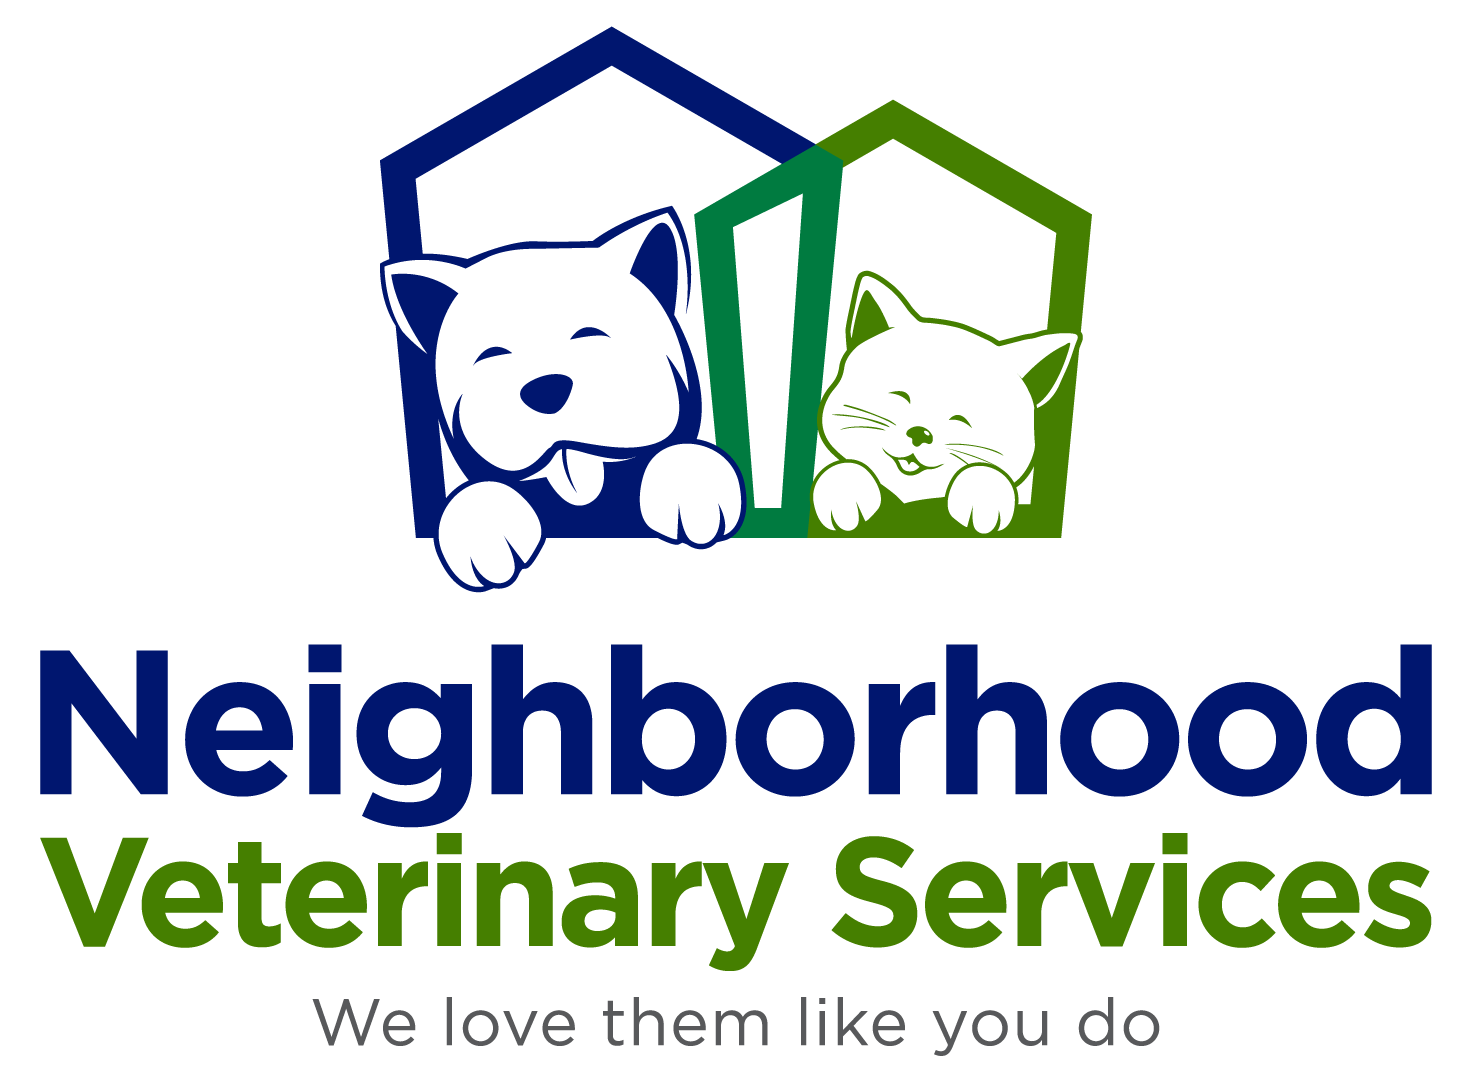 Neighborhood Veterinary Services